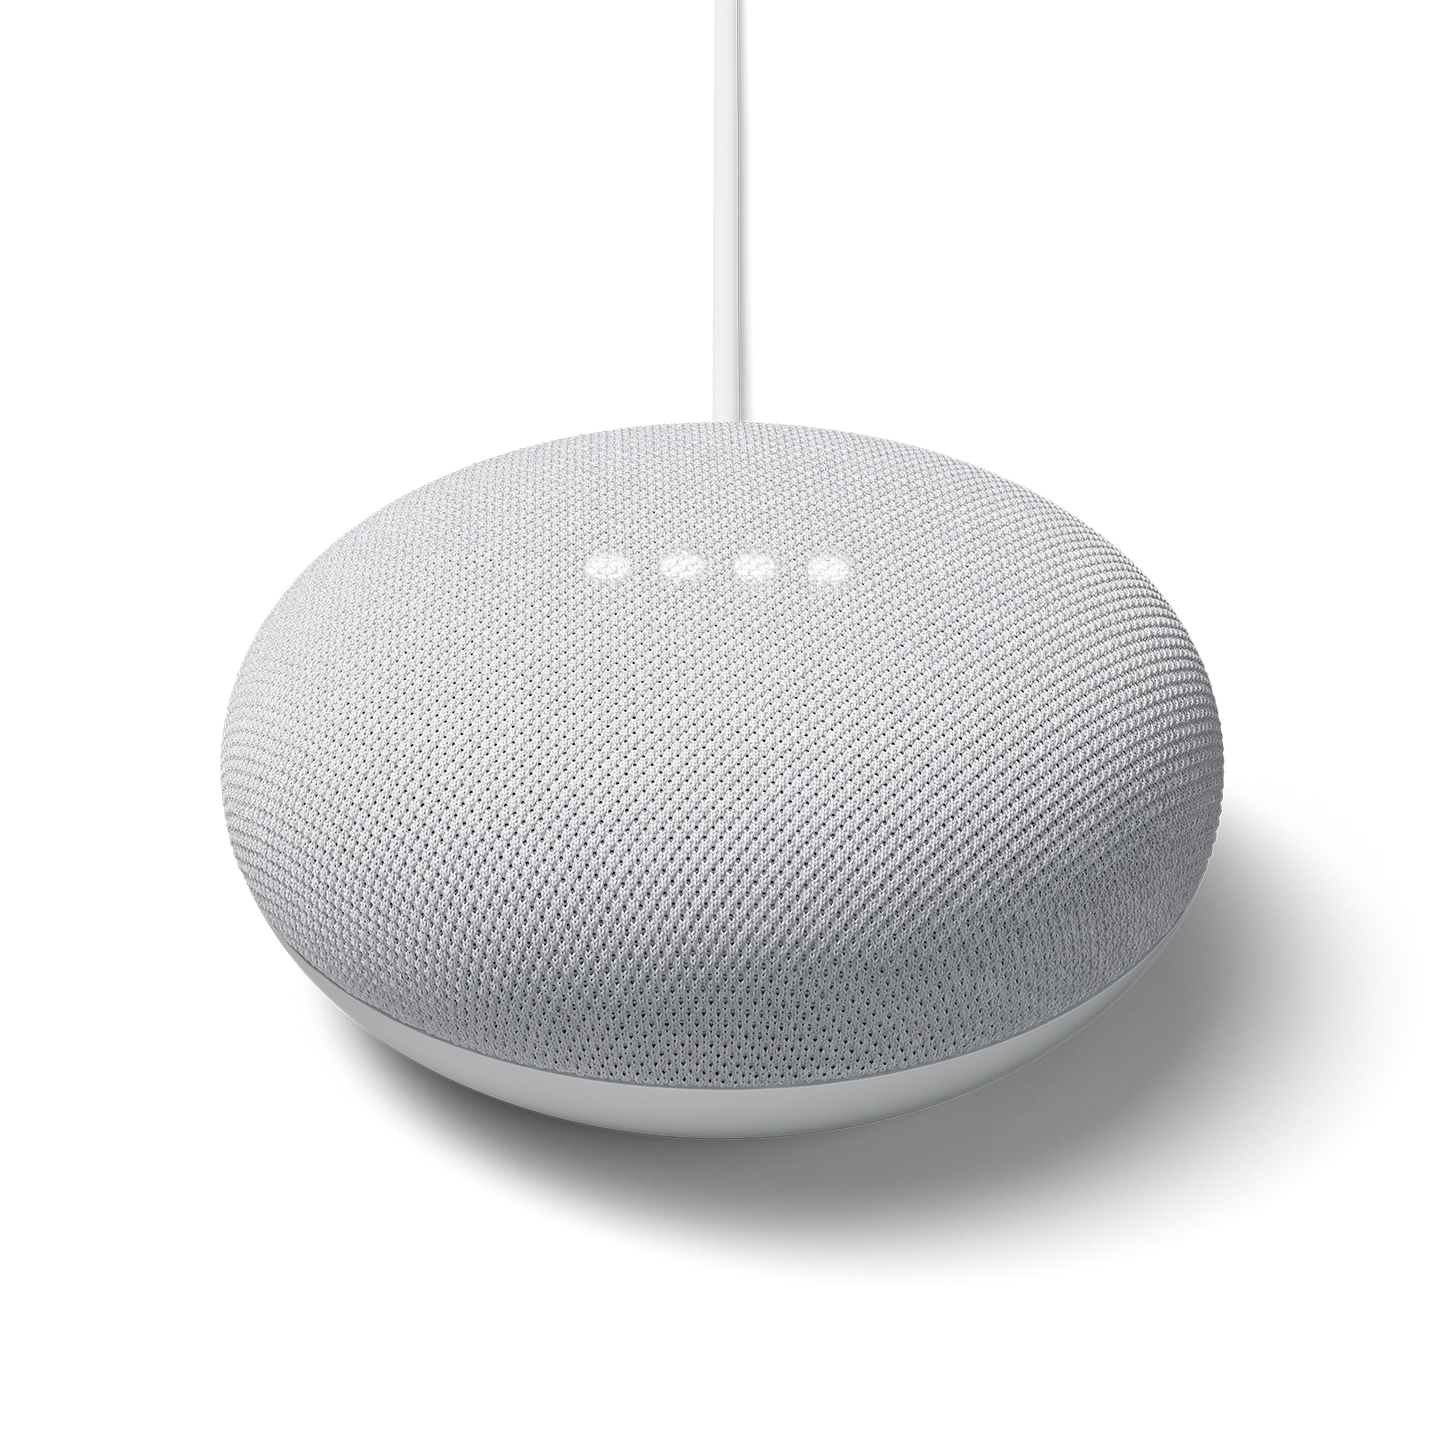 Google Nest Mini – Wyze Labs, Inc.